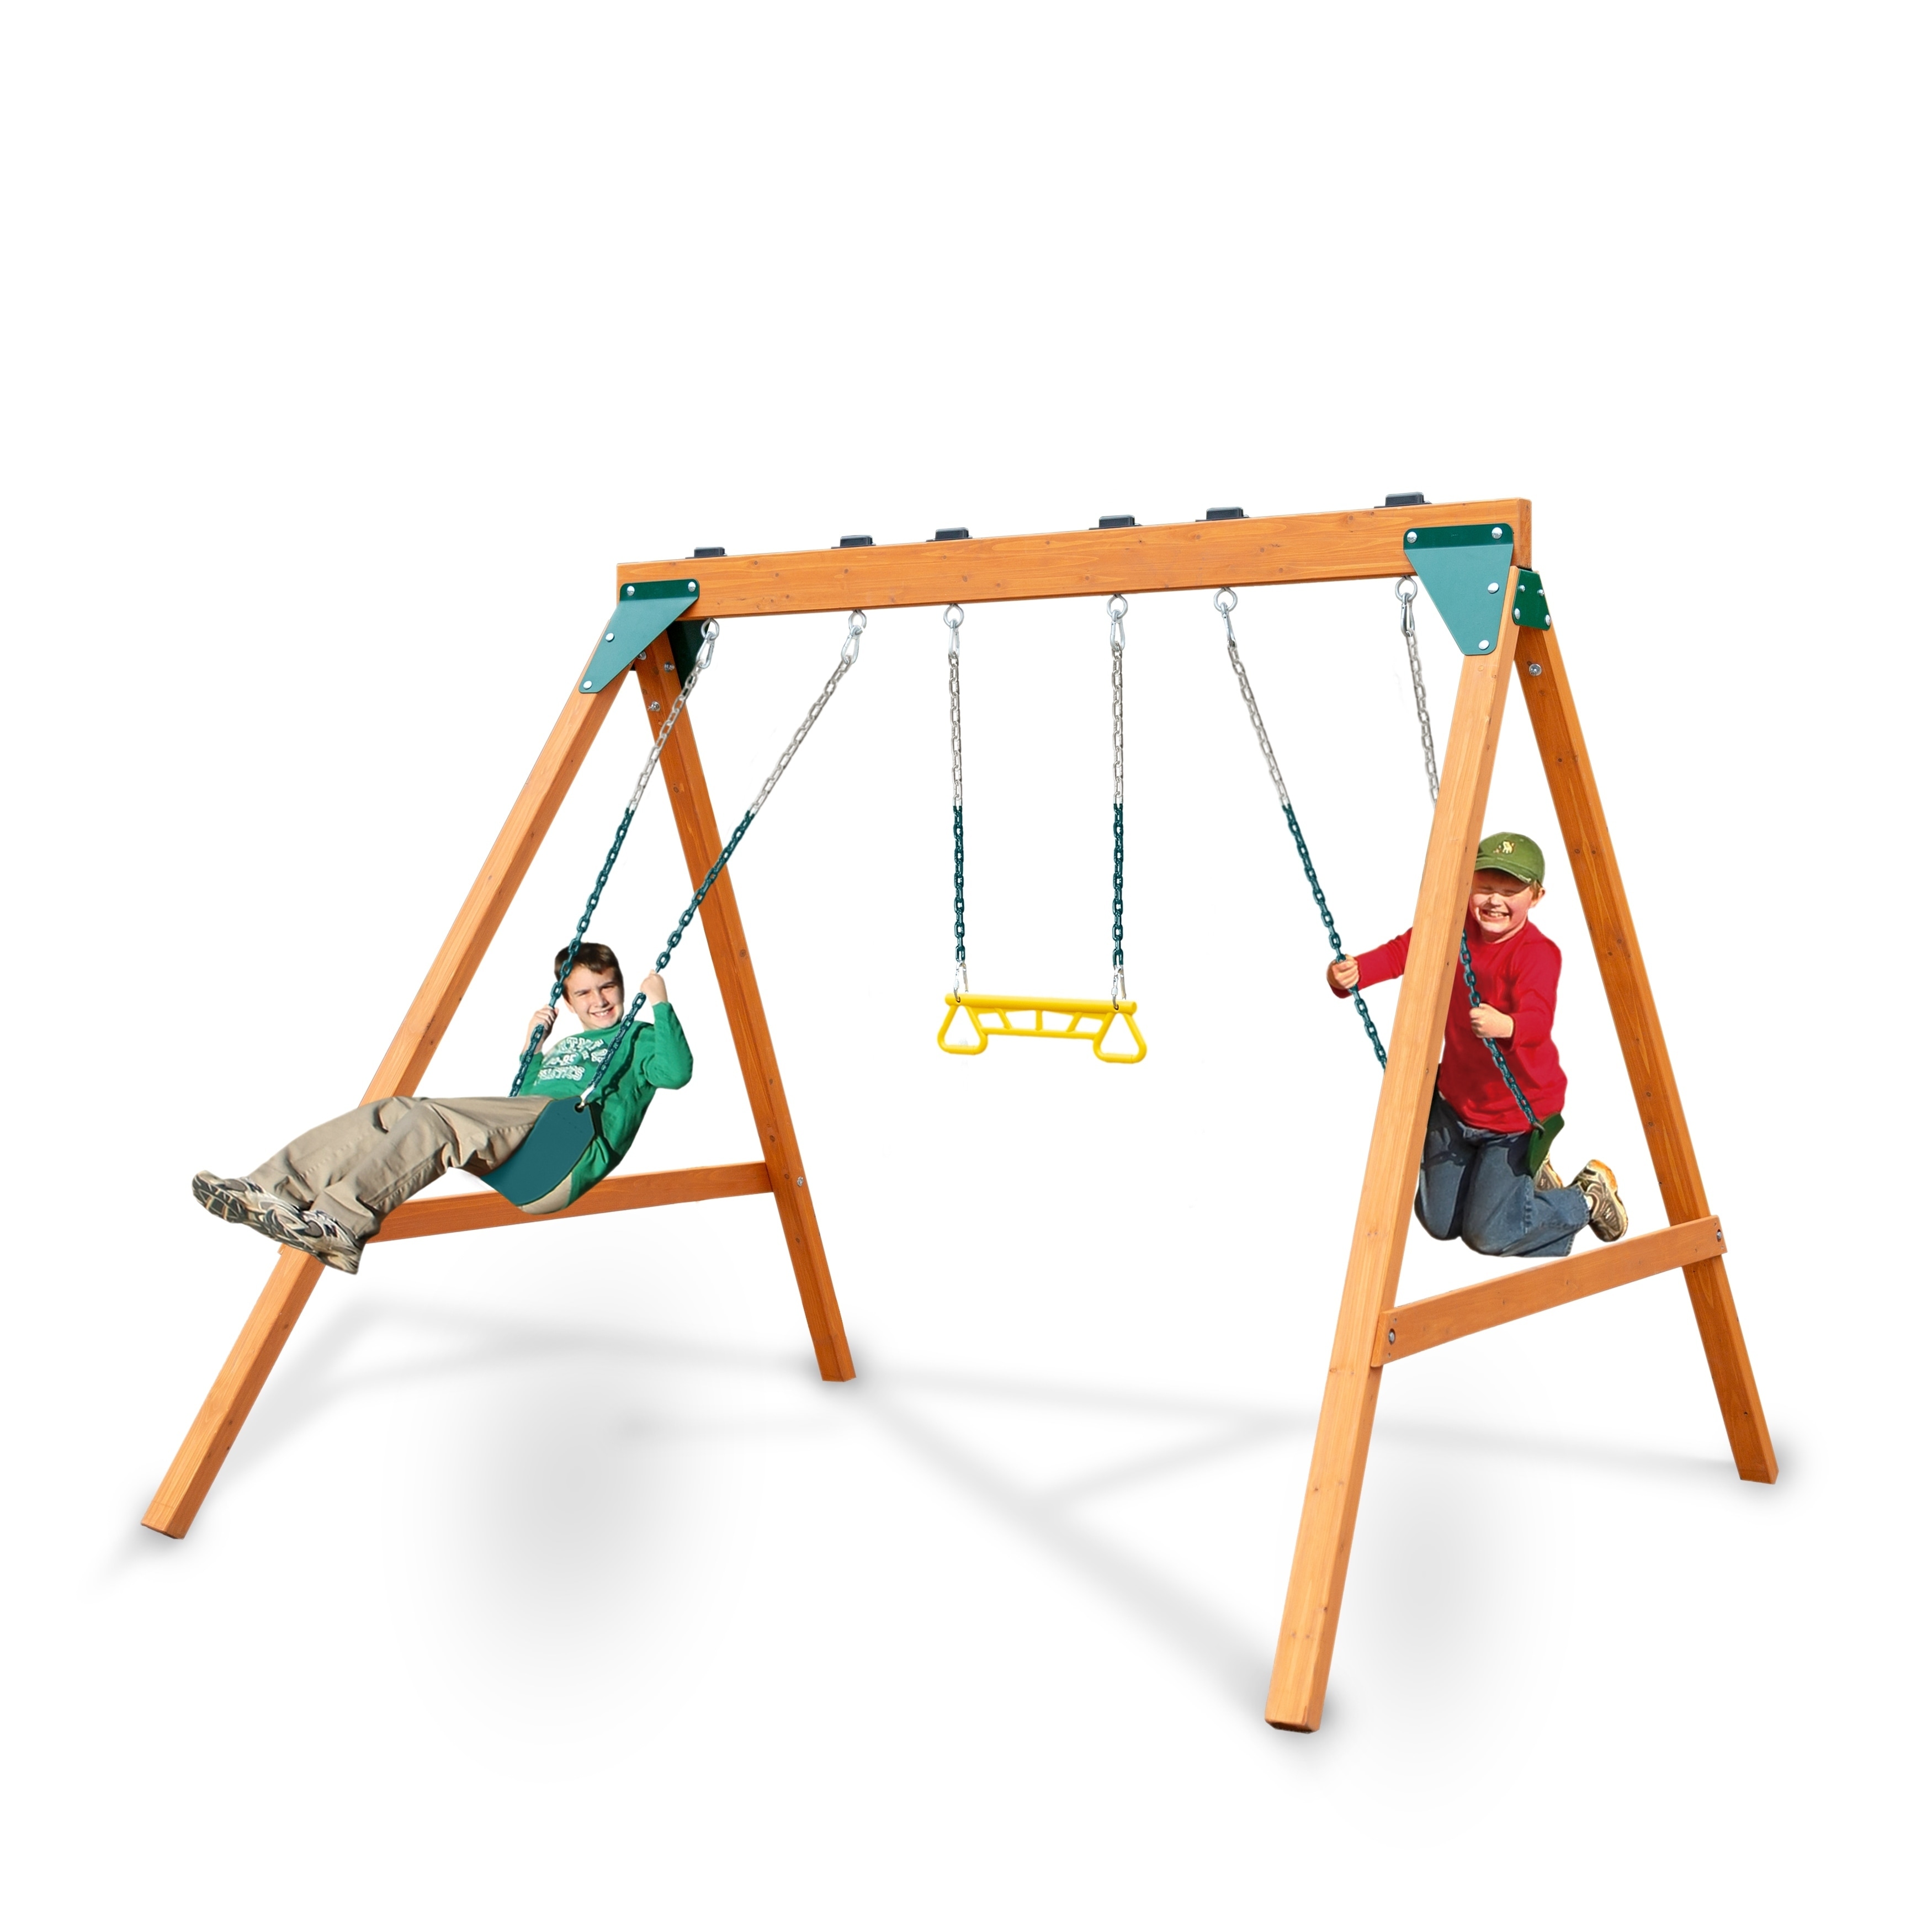 2 swings and slide set